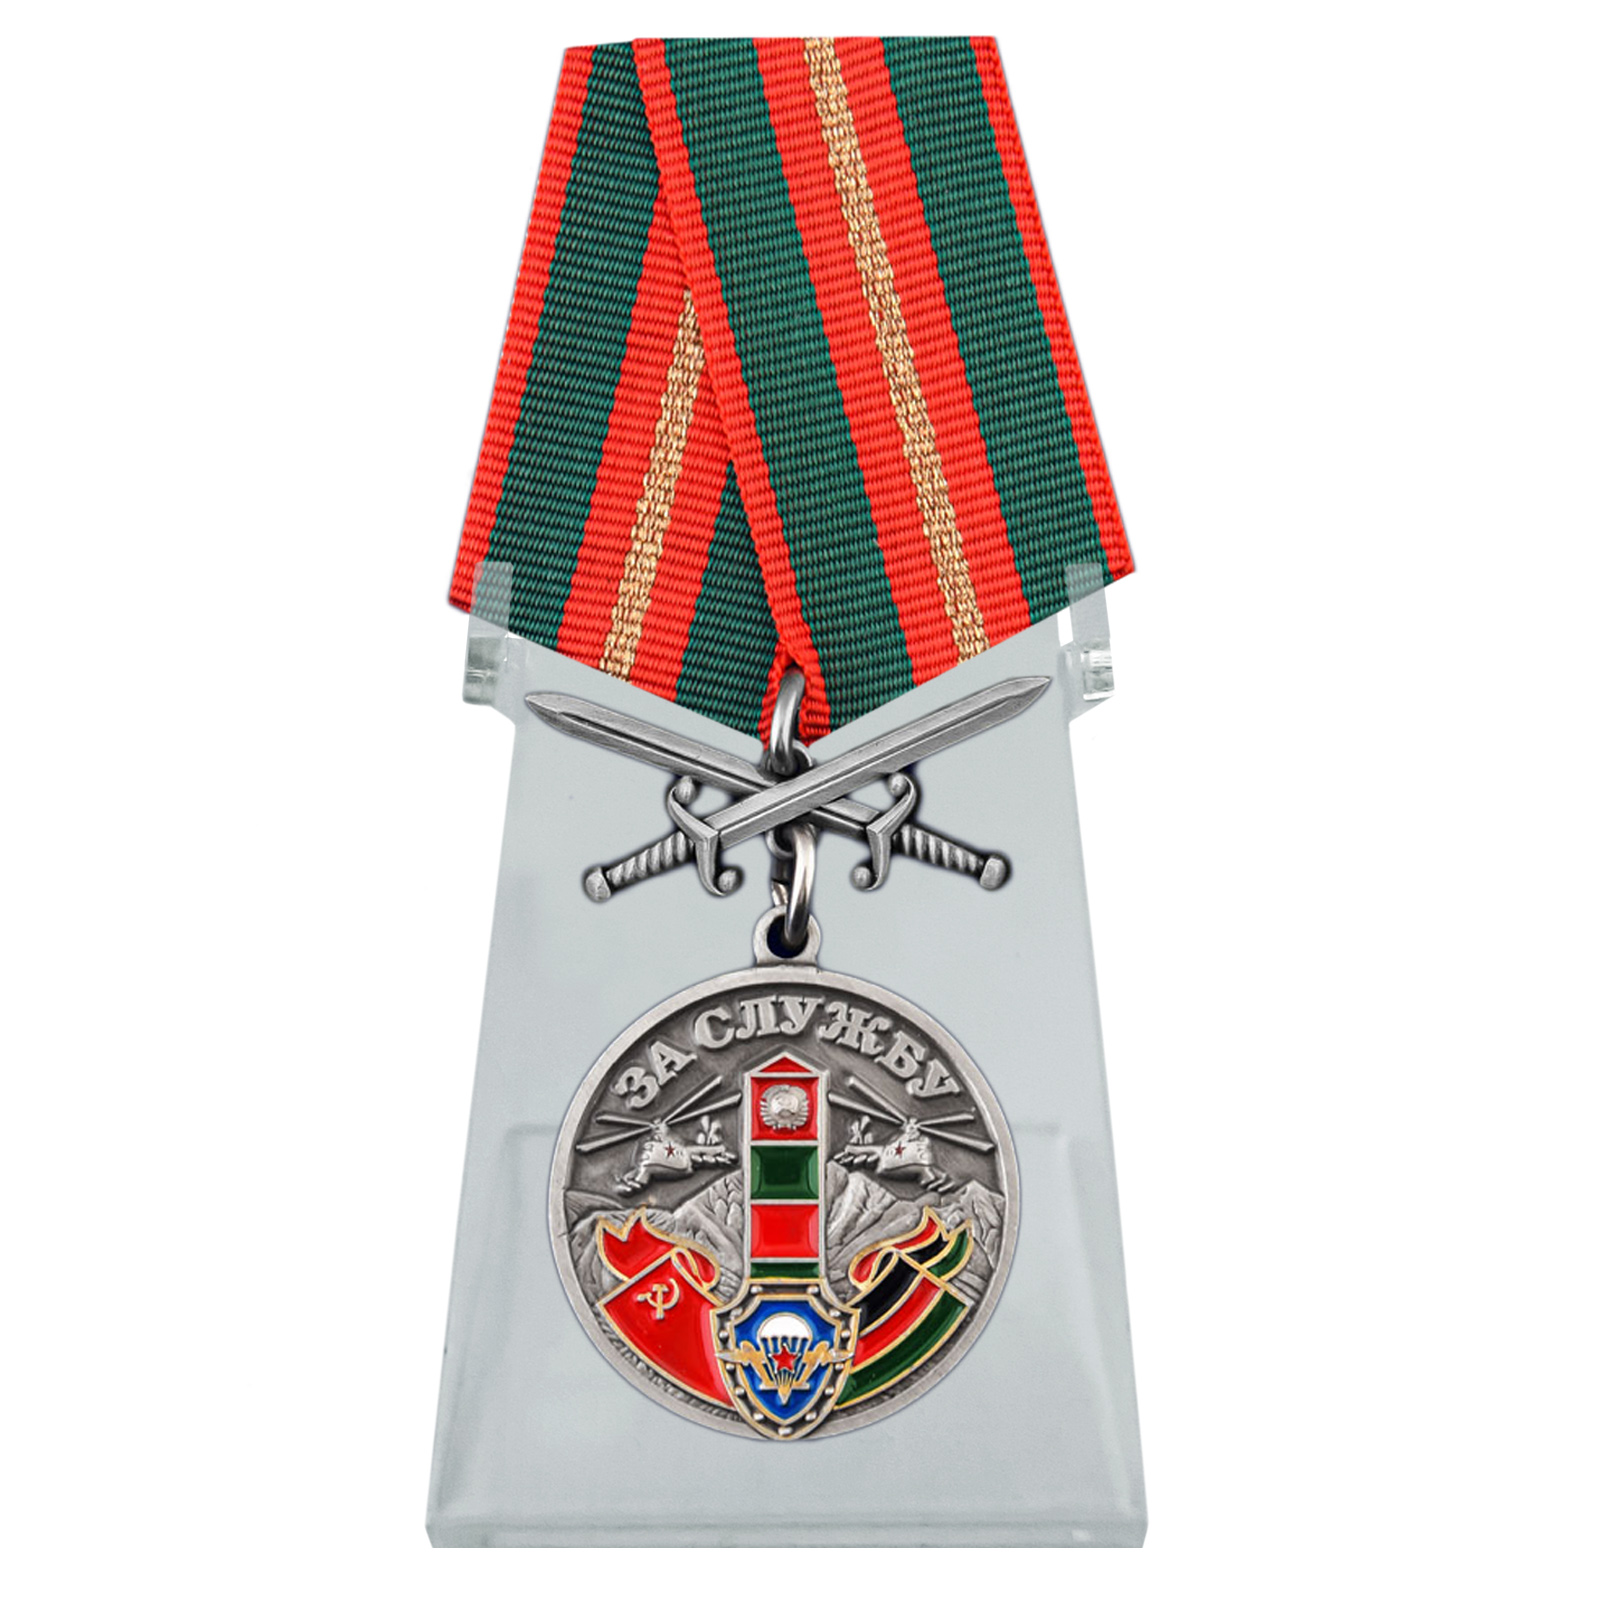 Купить медаль За службу в СБО, ММГ, ДШМГ, ПВ КГБ СССР Афганистан  на подставке с доставкой